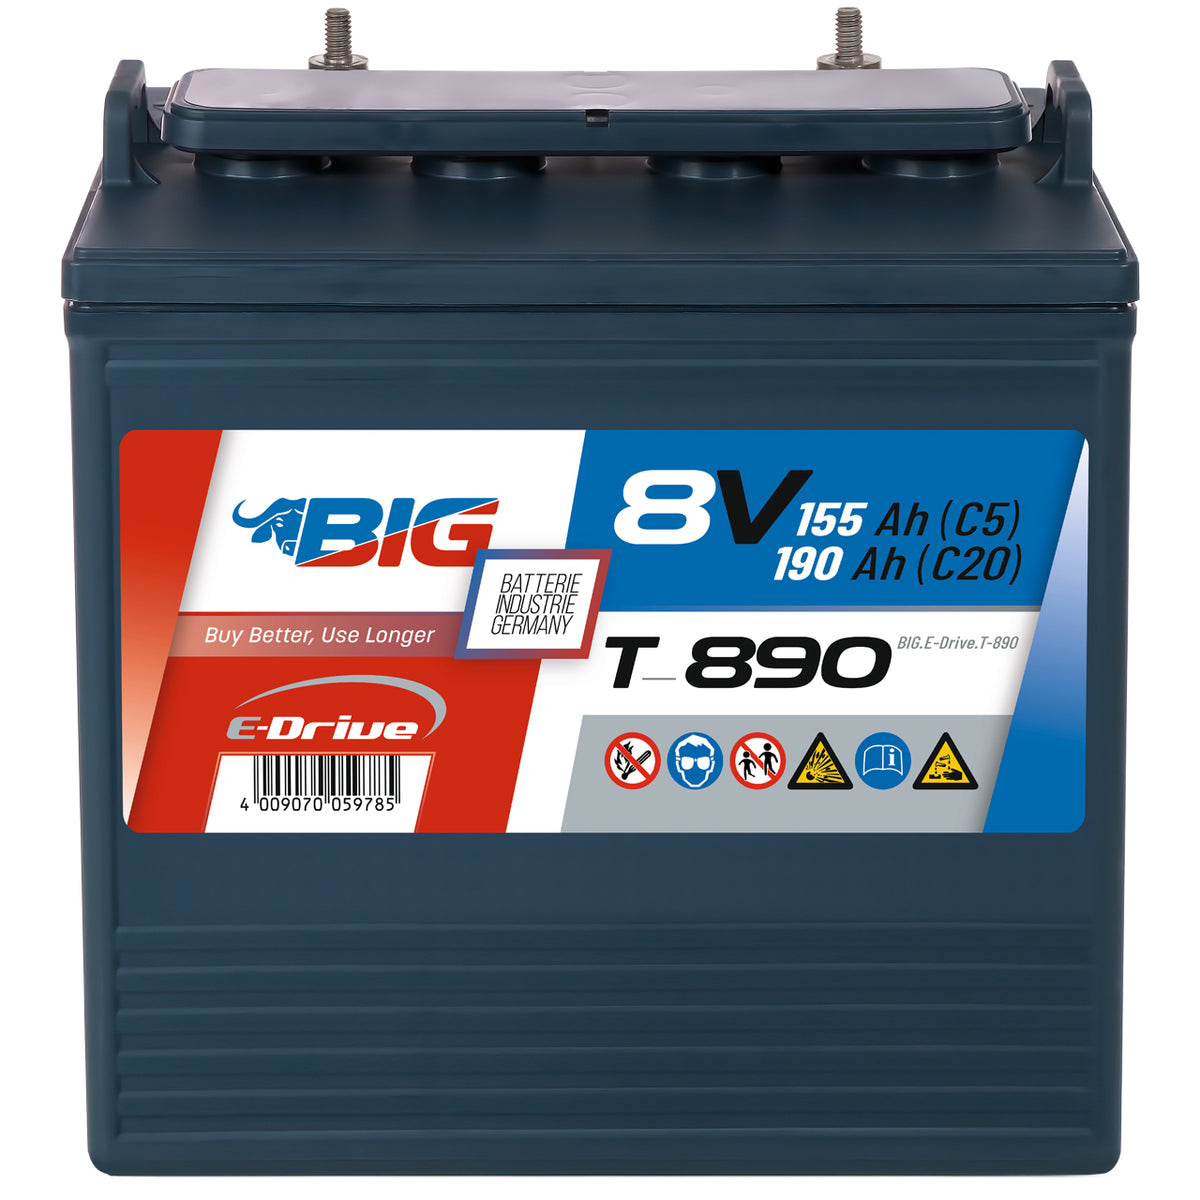 BIG E-Drive T-890 (GC8) 8V 190Ah